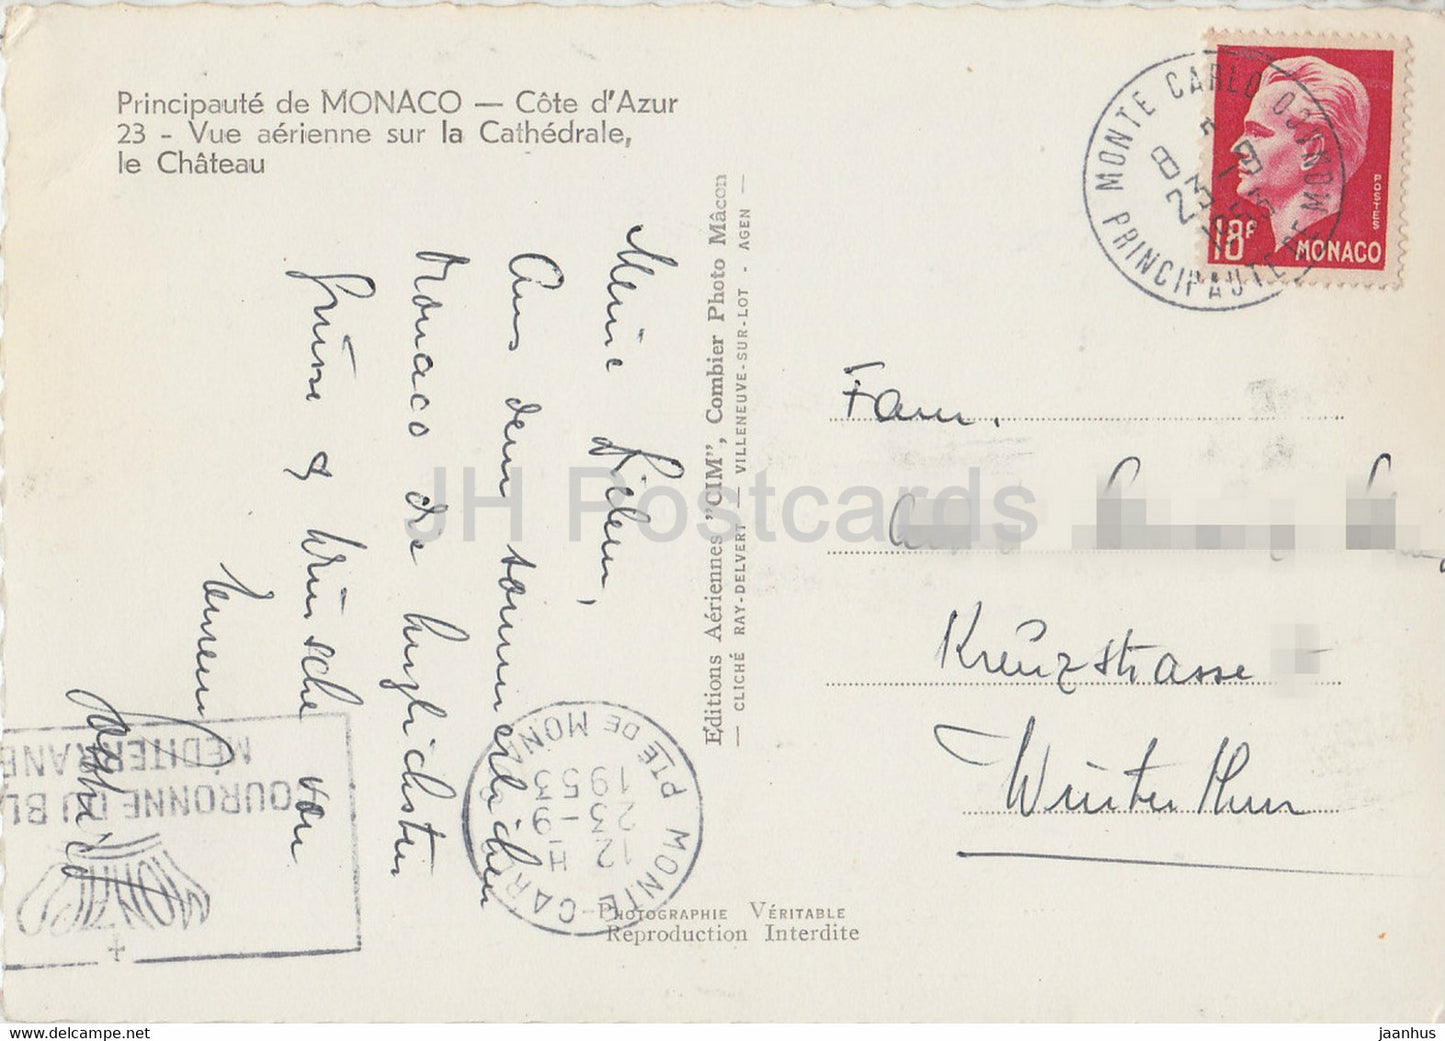 Vue aerienne sur la Cathedrale - Le Chateau - Kathedrale - Schloss - alte Postkarte - 1953 - Monaco - gebraucht